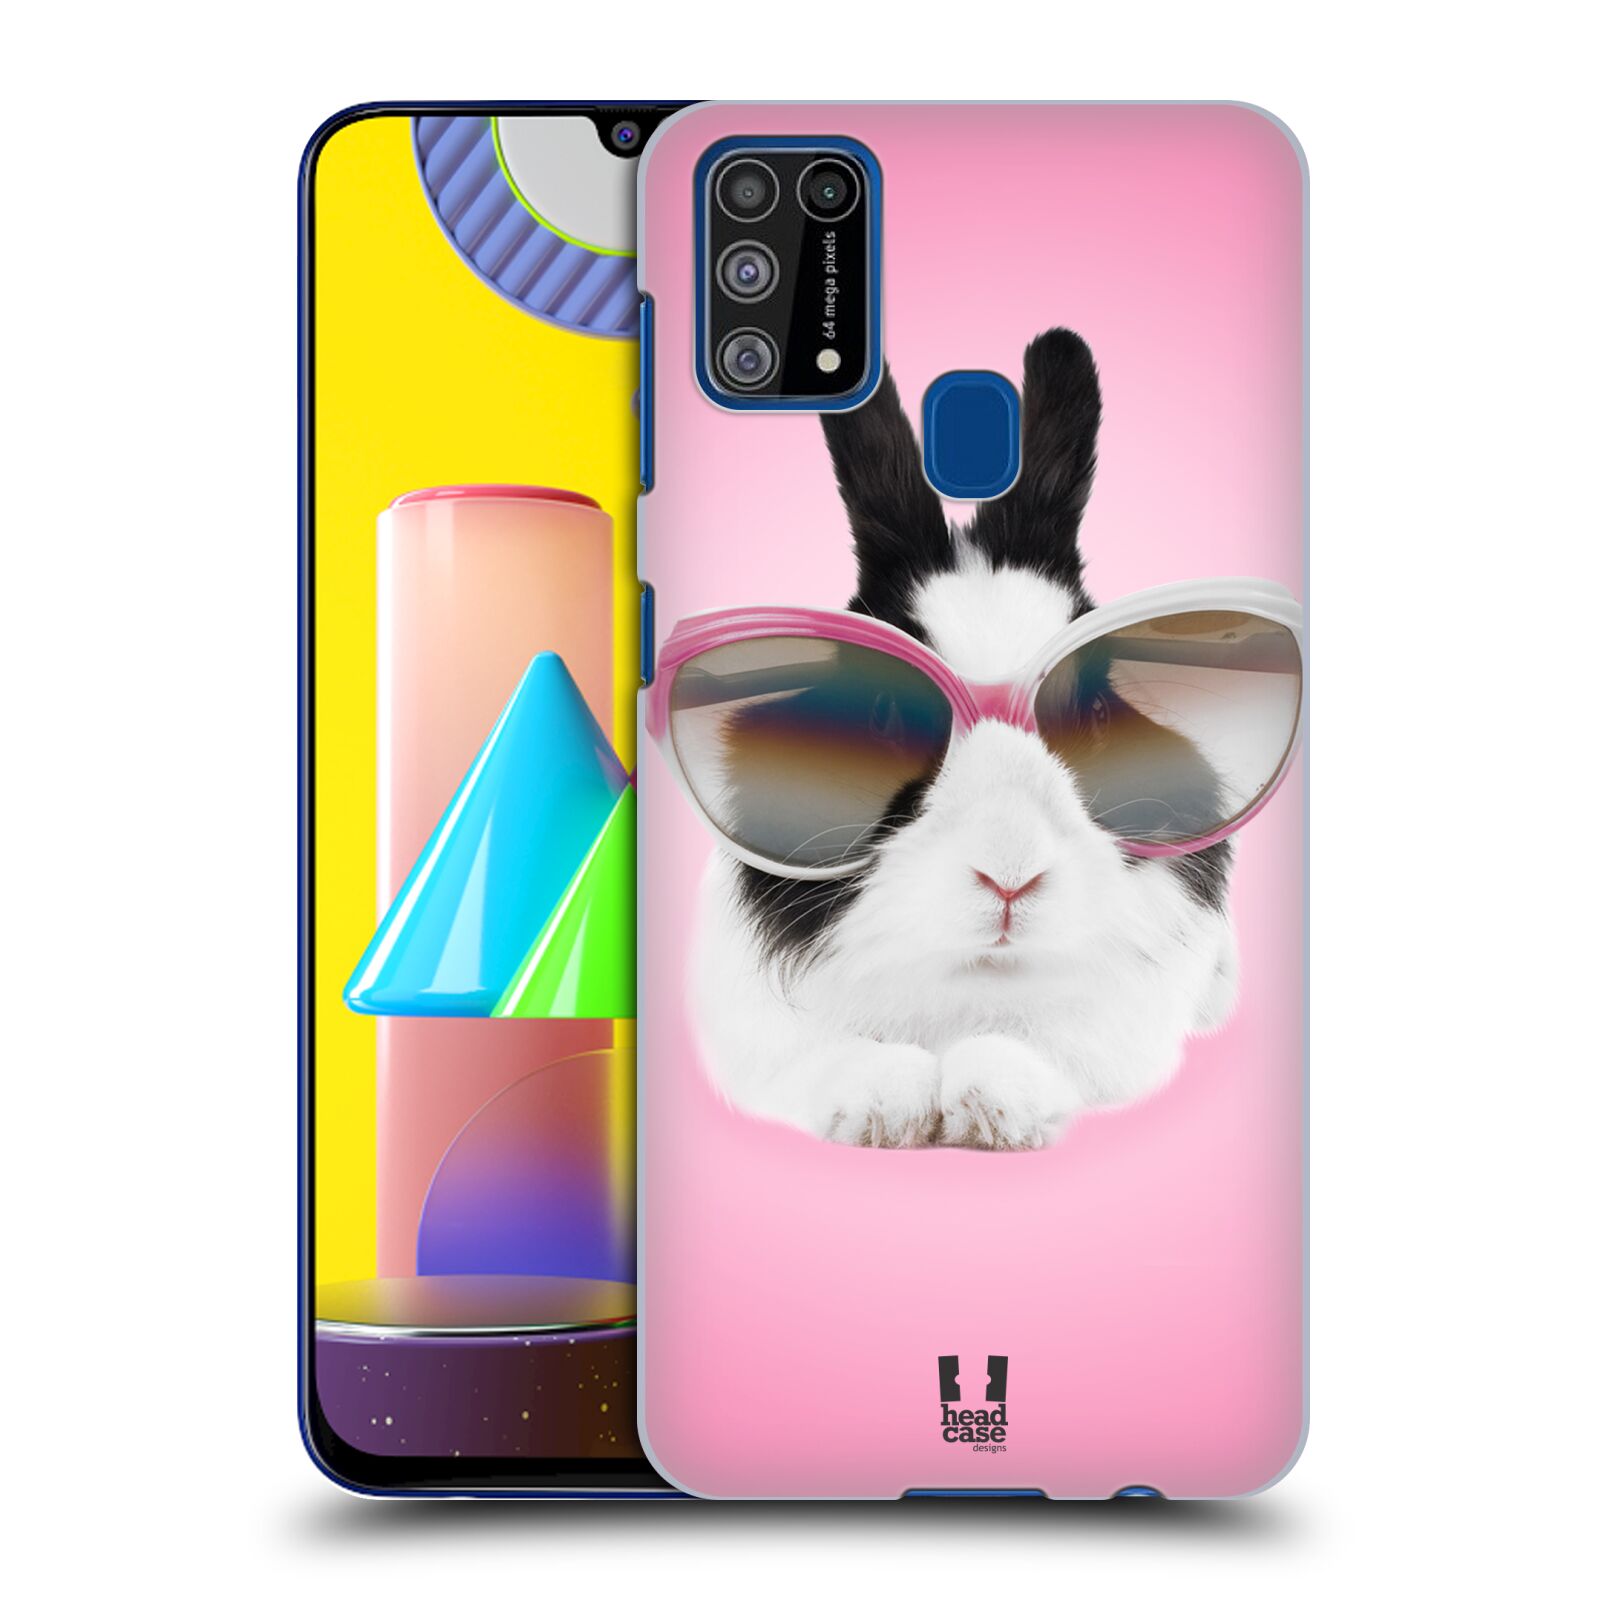 Plastový obal HEAD CASE na mobil Samsung Galaxy M31 vzor Legrační zvířátka roztomilý králíček s brýlemi růžová